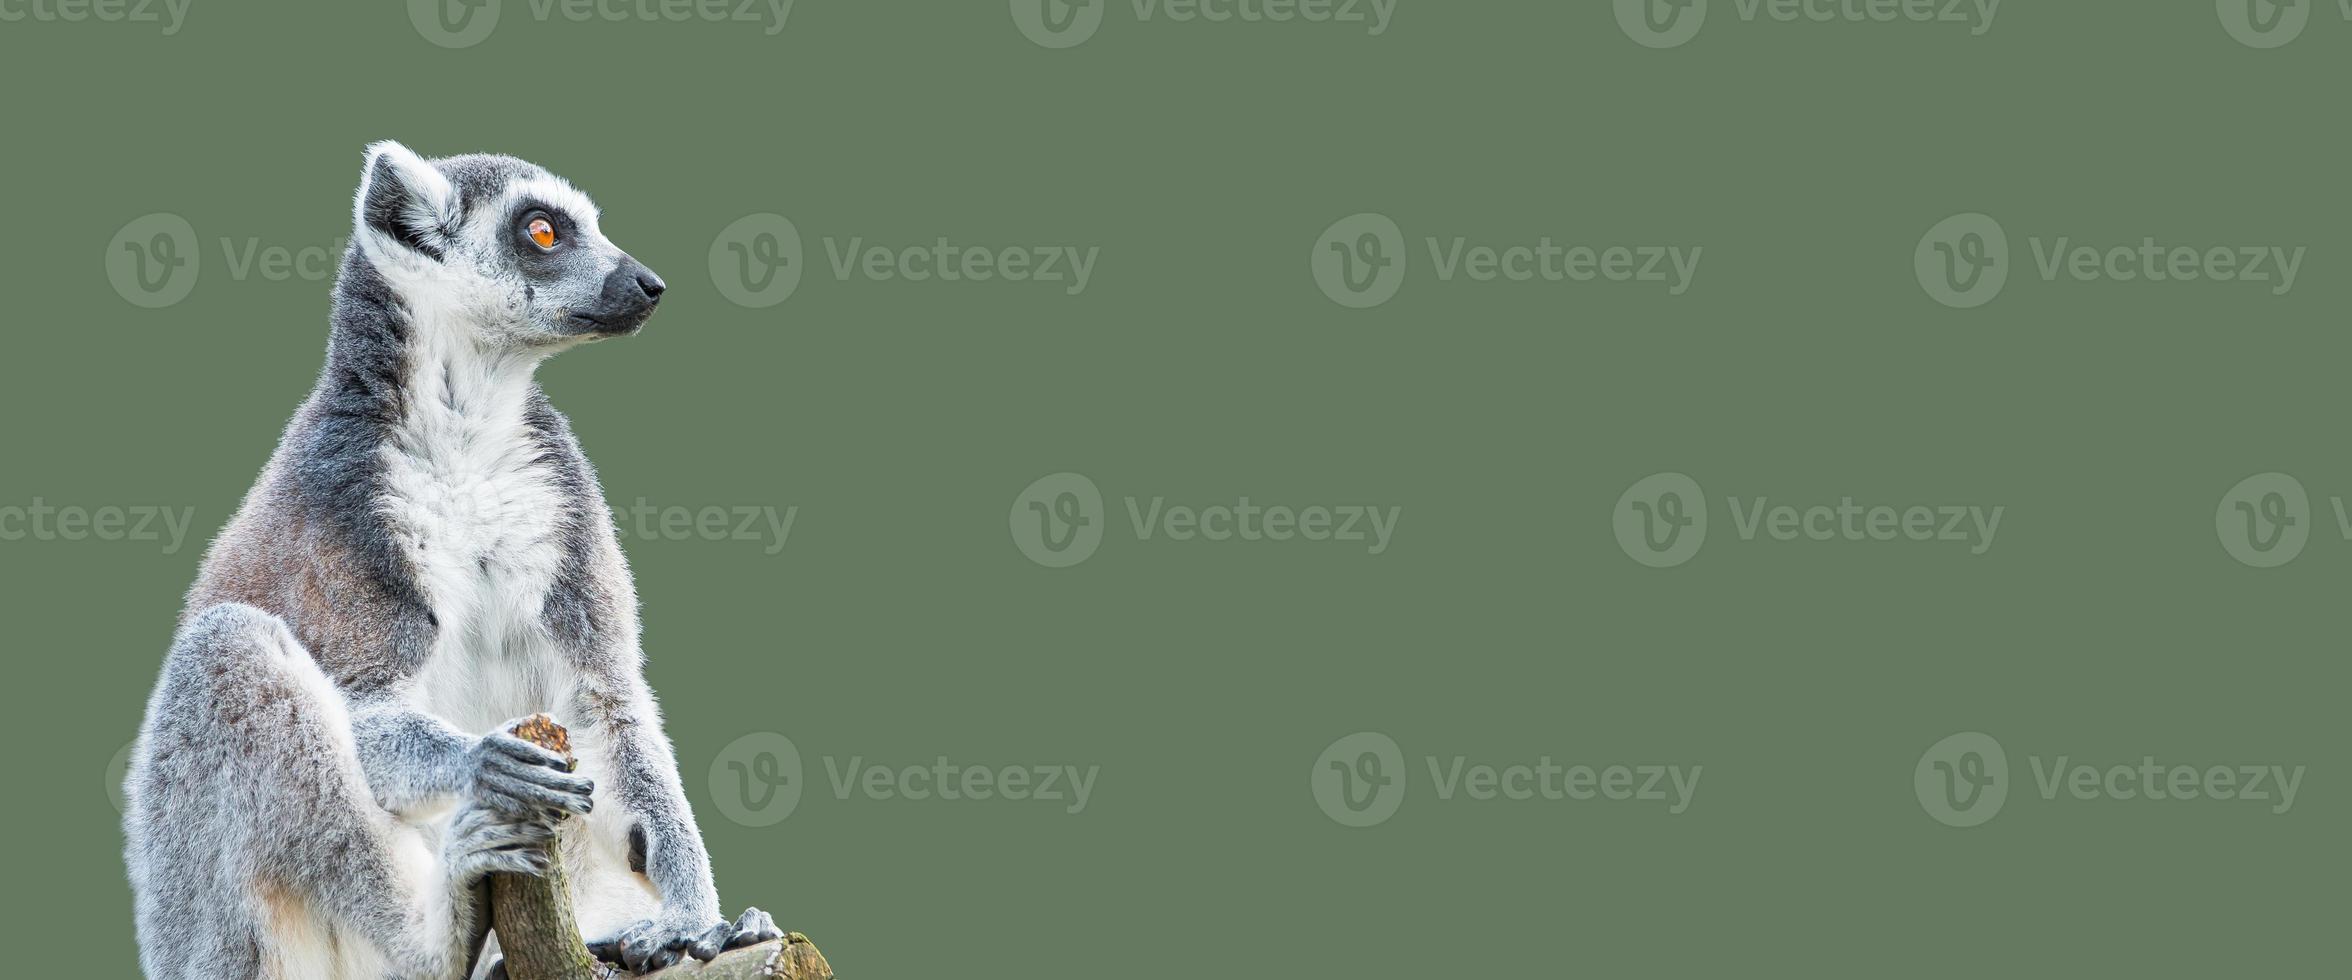 banner con un retrato de un lindo lémur de Madagascar de cola anillada disfrutando del verano, primer plano, con espacio de copia y fondo verde sólido. concepto de biodiversidad, bienestar animal y conservación de la vida silvestre. foto